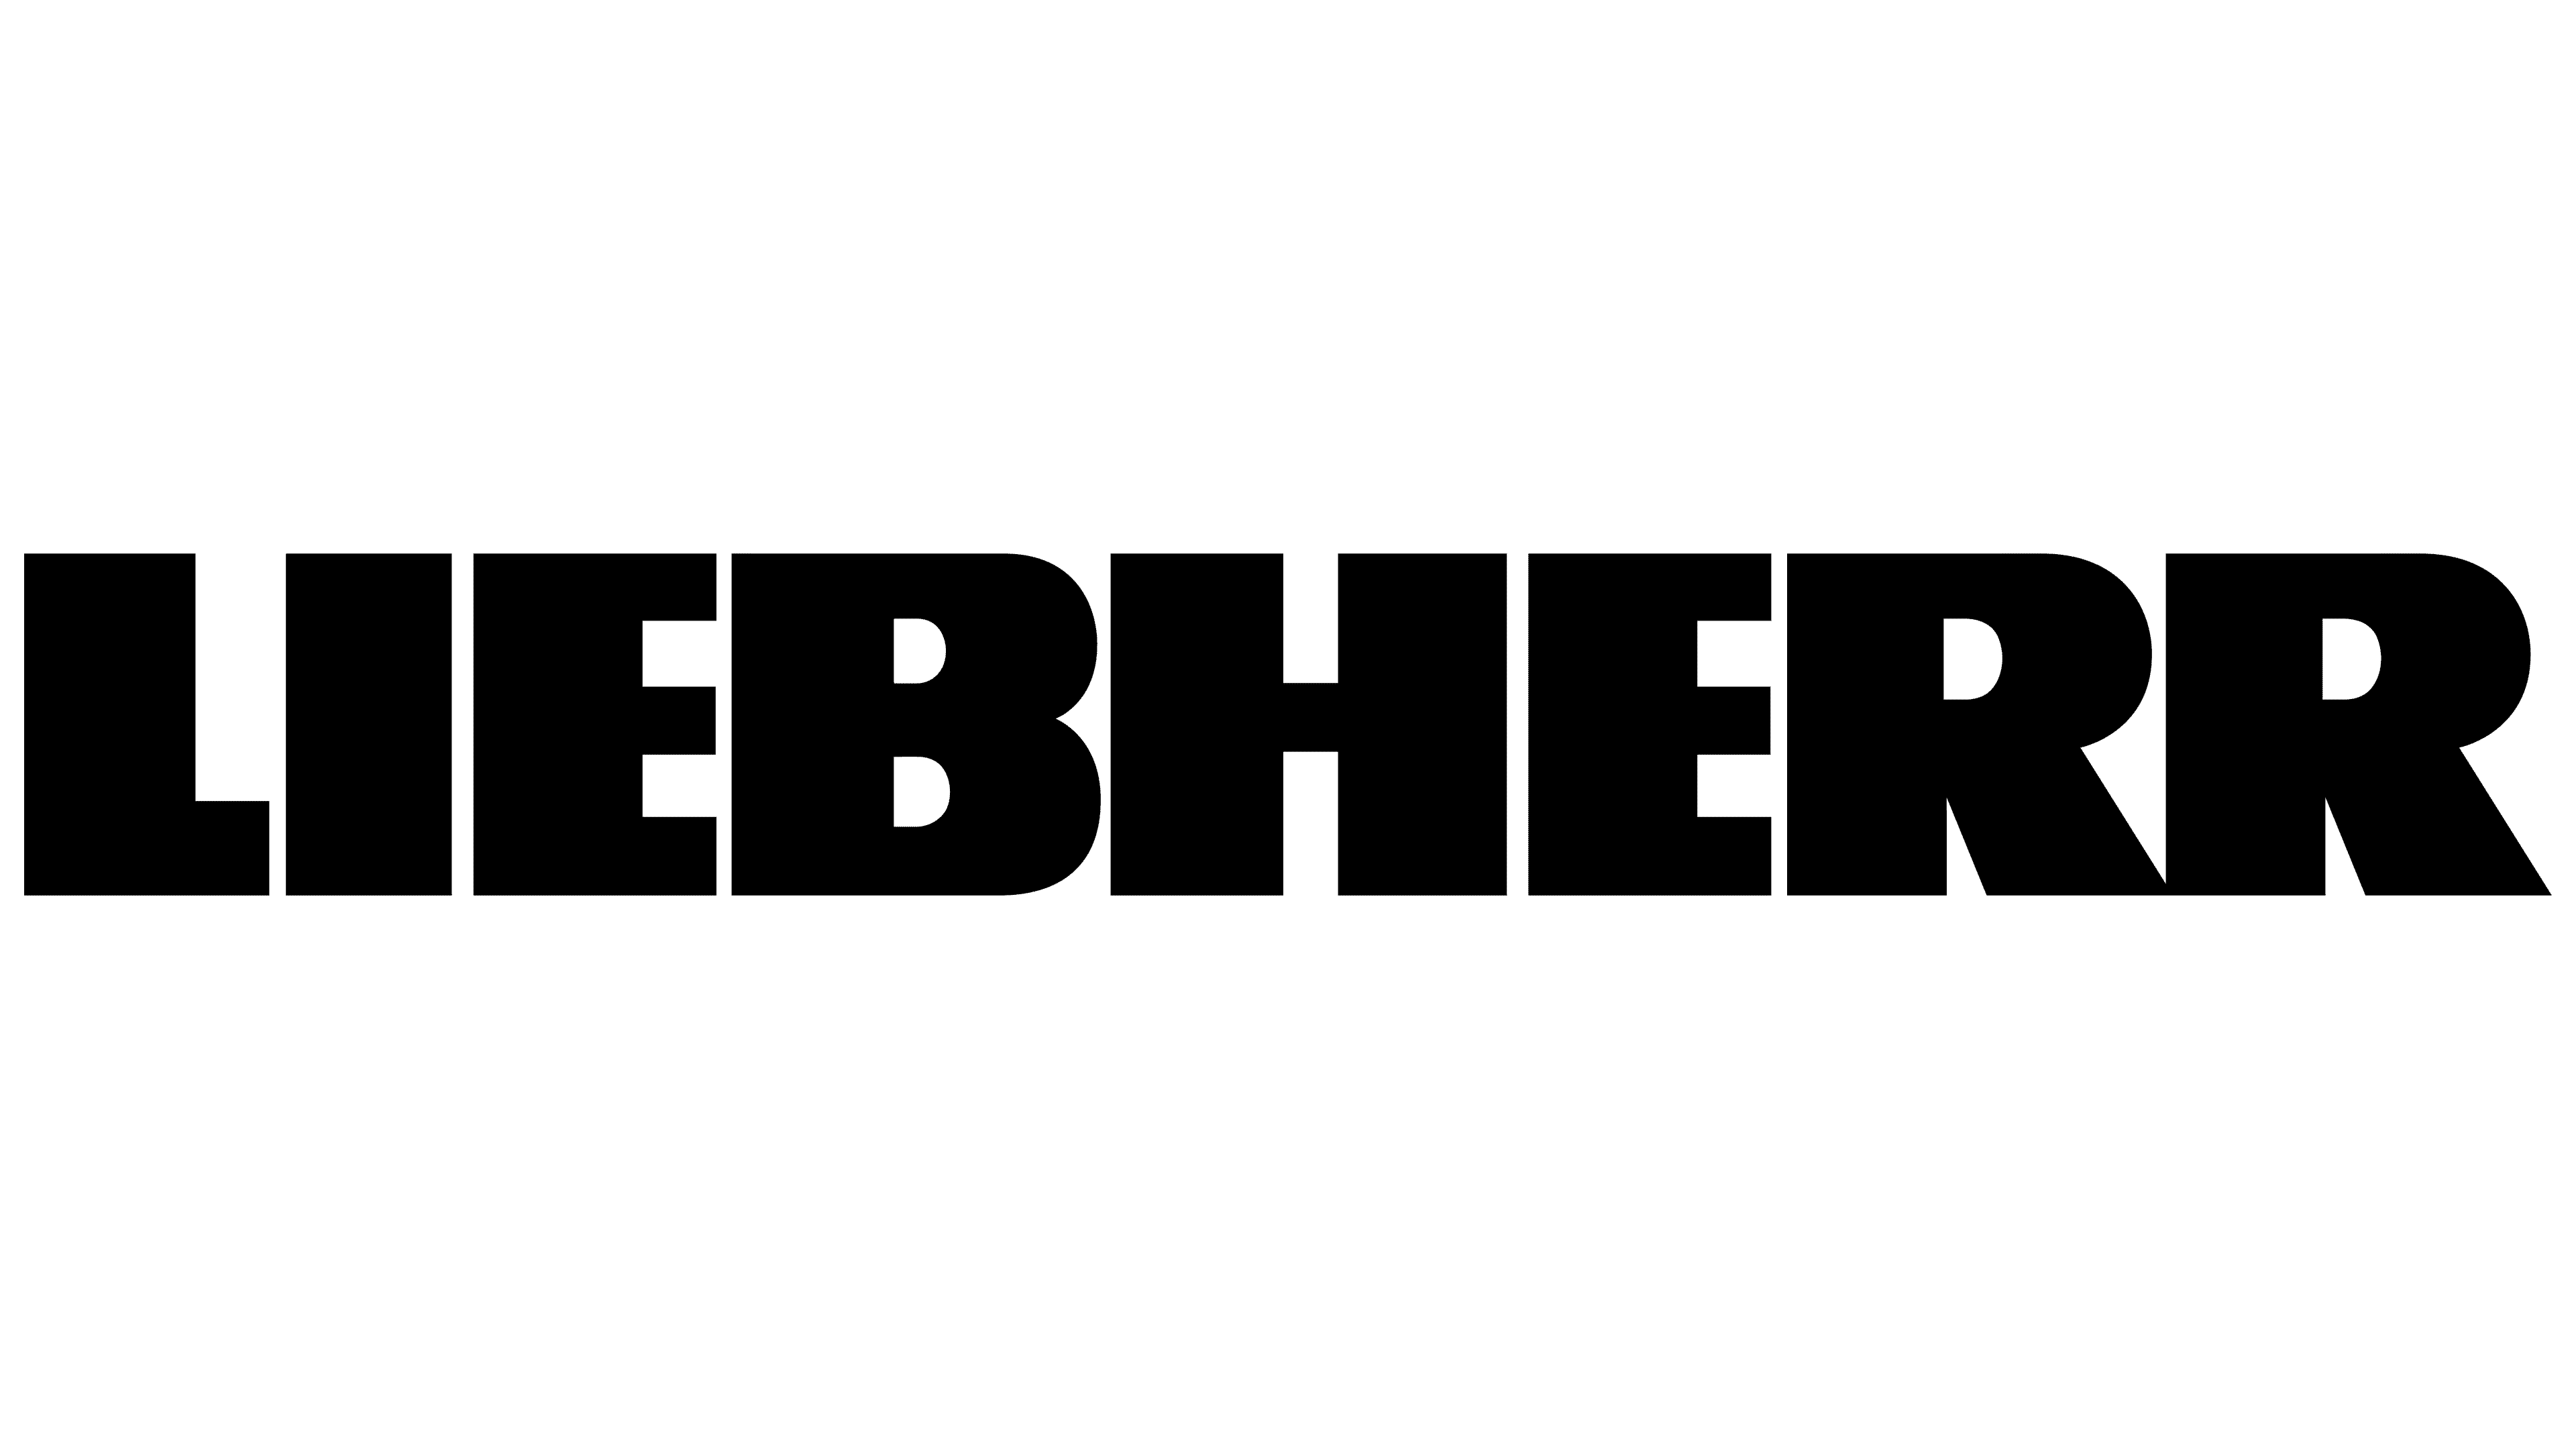 Liebherr Machinery & Equipment